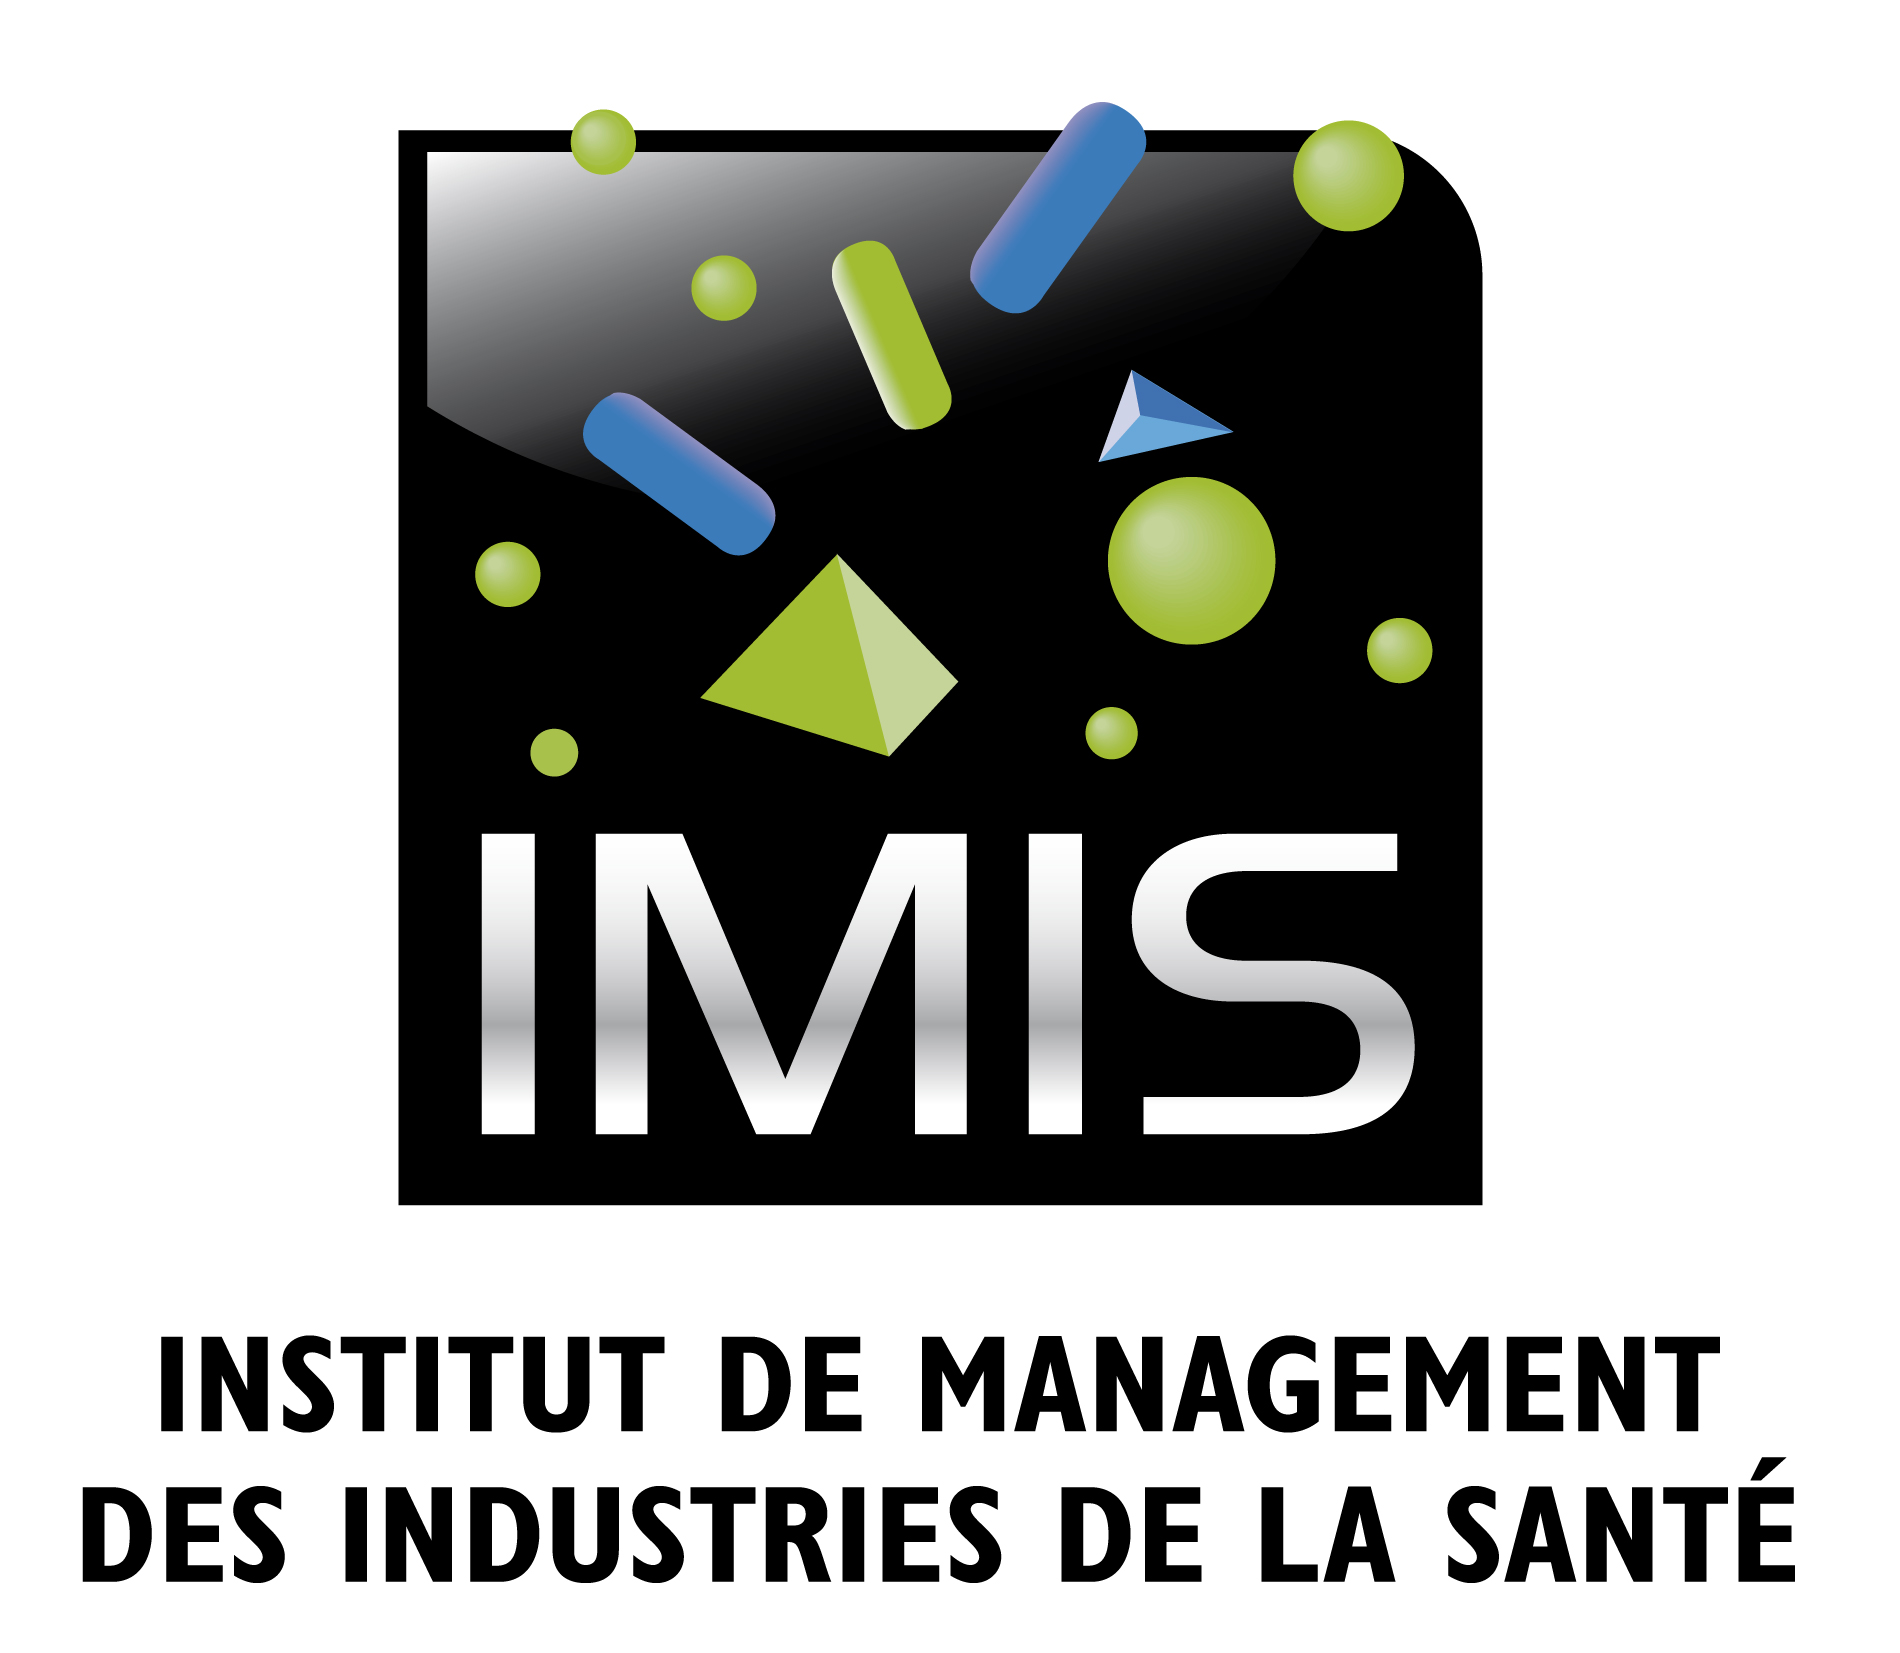 Institut de Management des industries de la santé (IMIS)